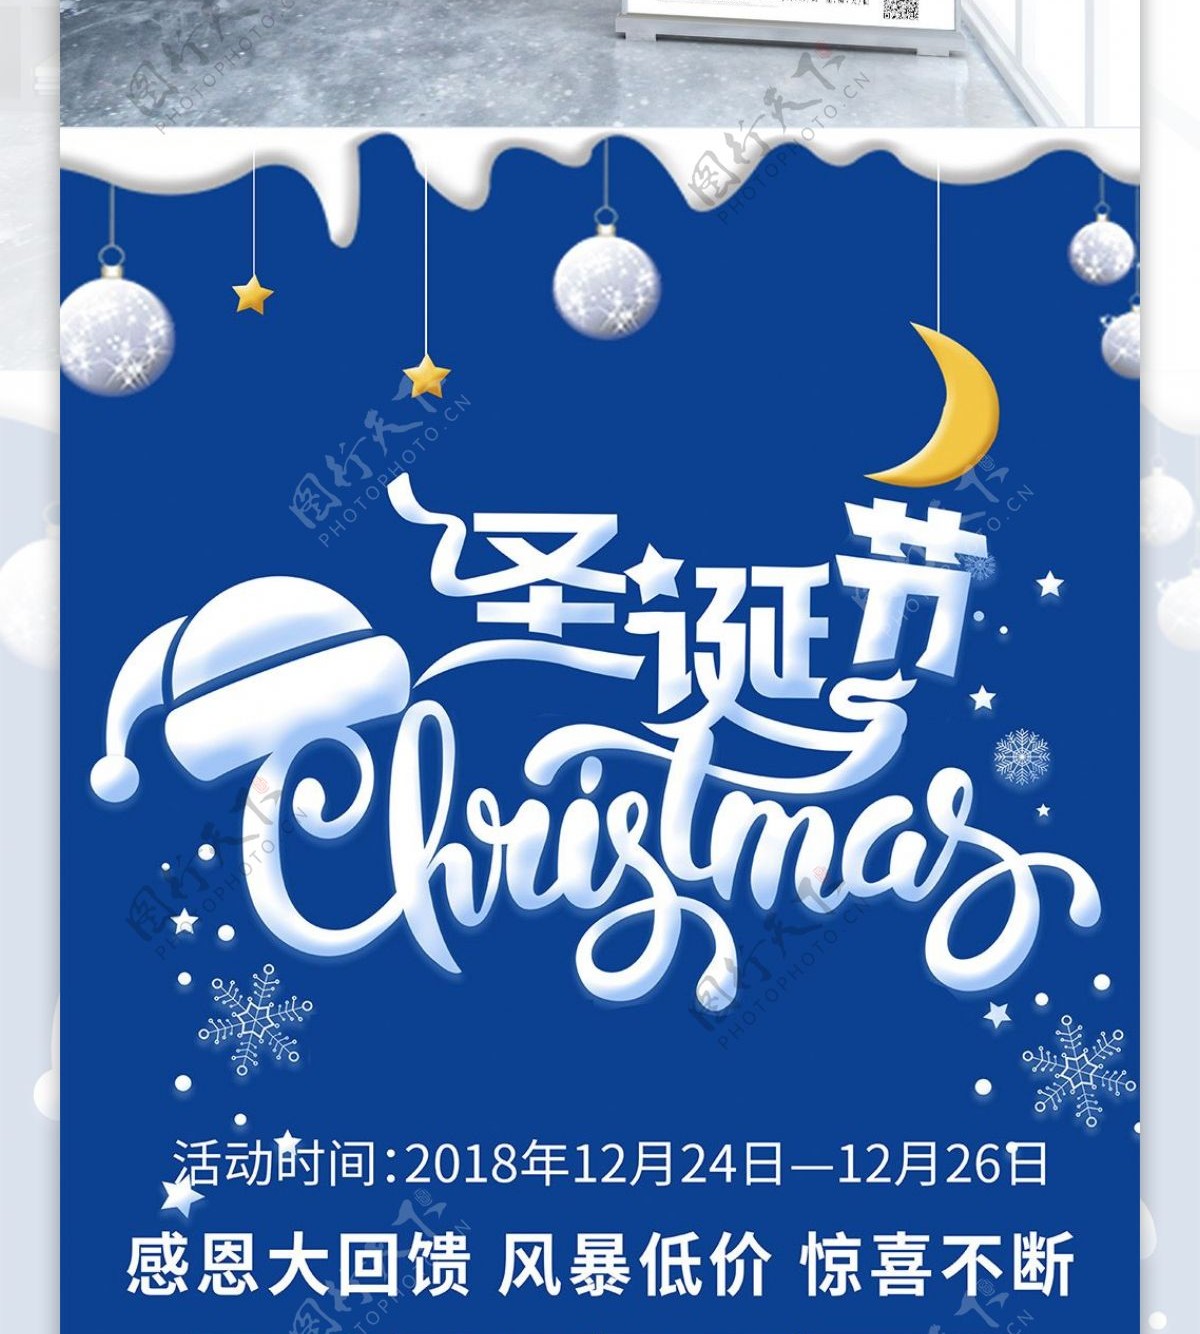 蓝色创意字体2018年圣诞节促销展架